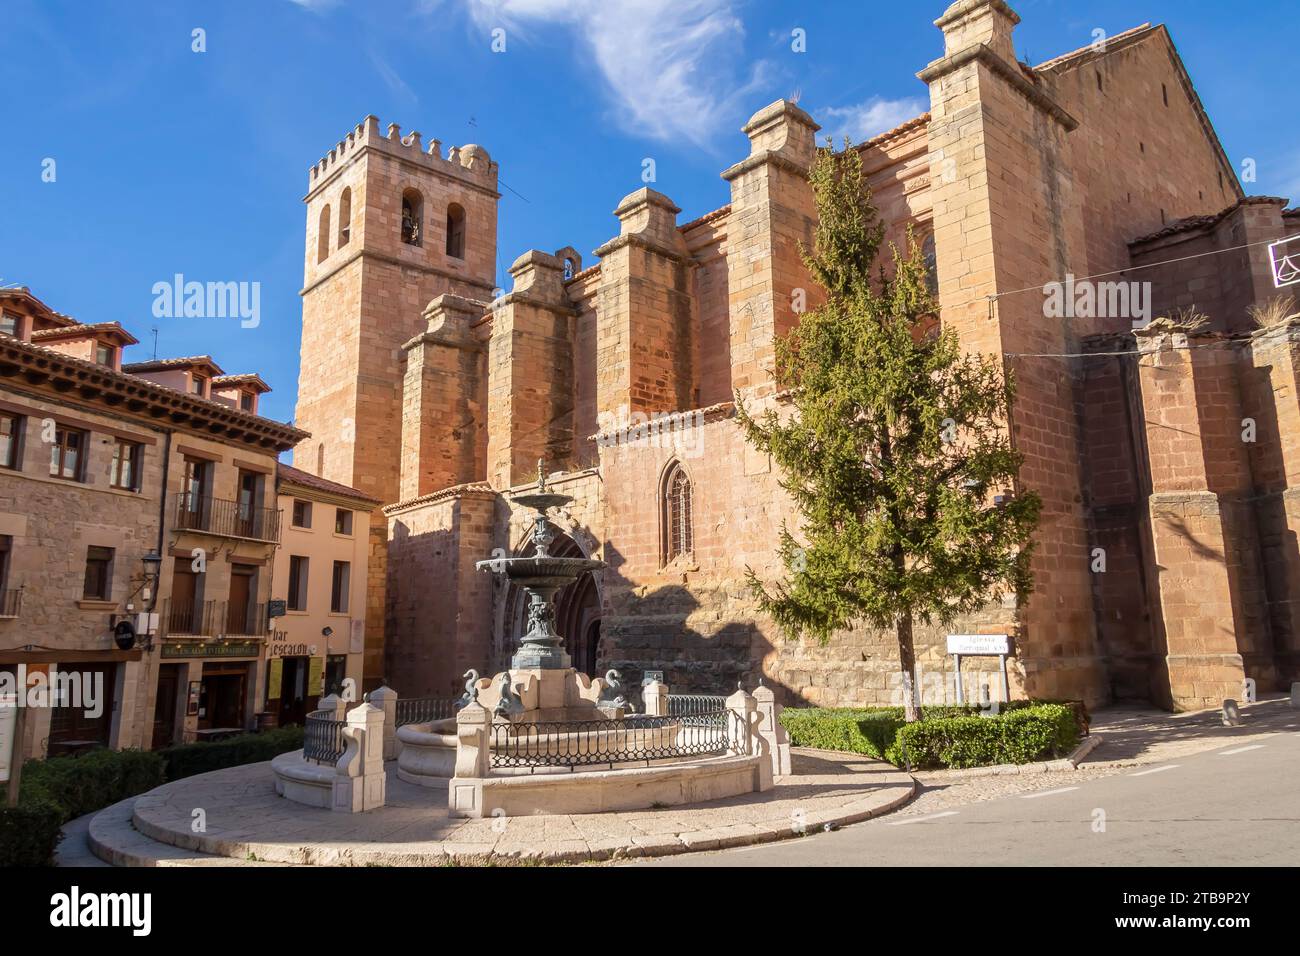 Mora de Rubielos church and architecture, Teruel, Spain Stock Photo